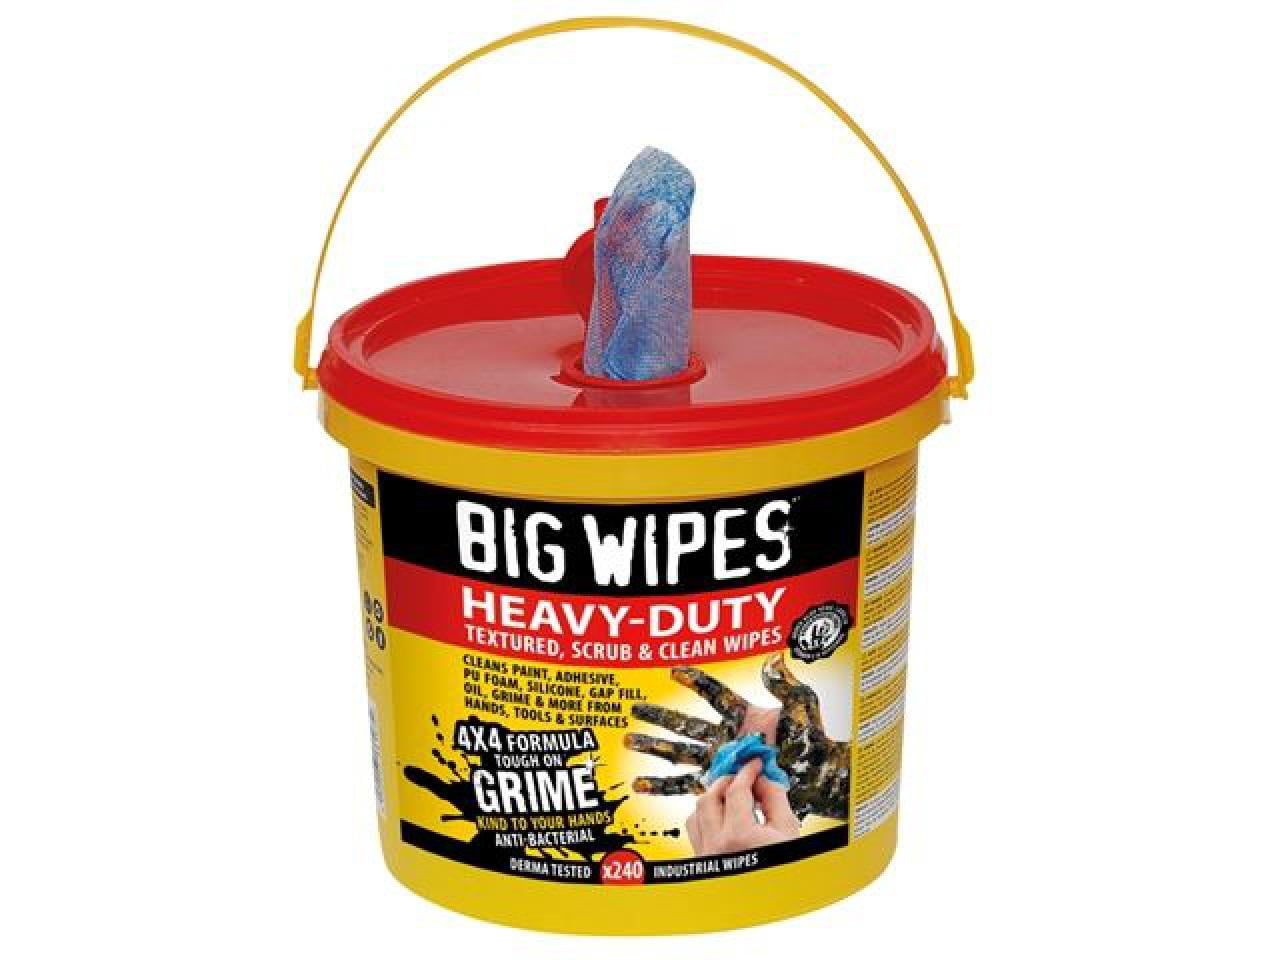 Big Wipes Heavy-Duty Wipes 80 Pack - G2420 - Bigwip